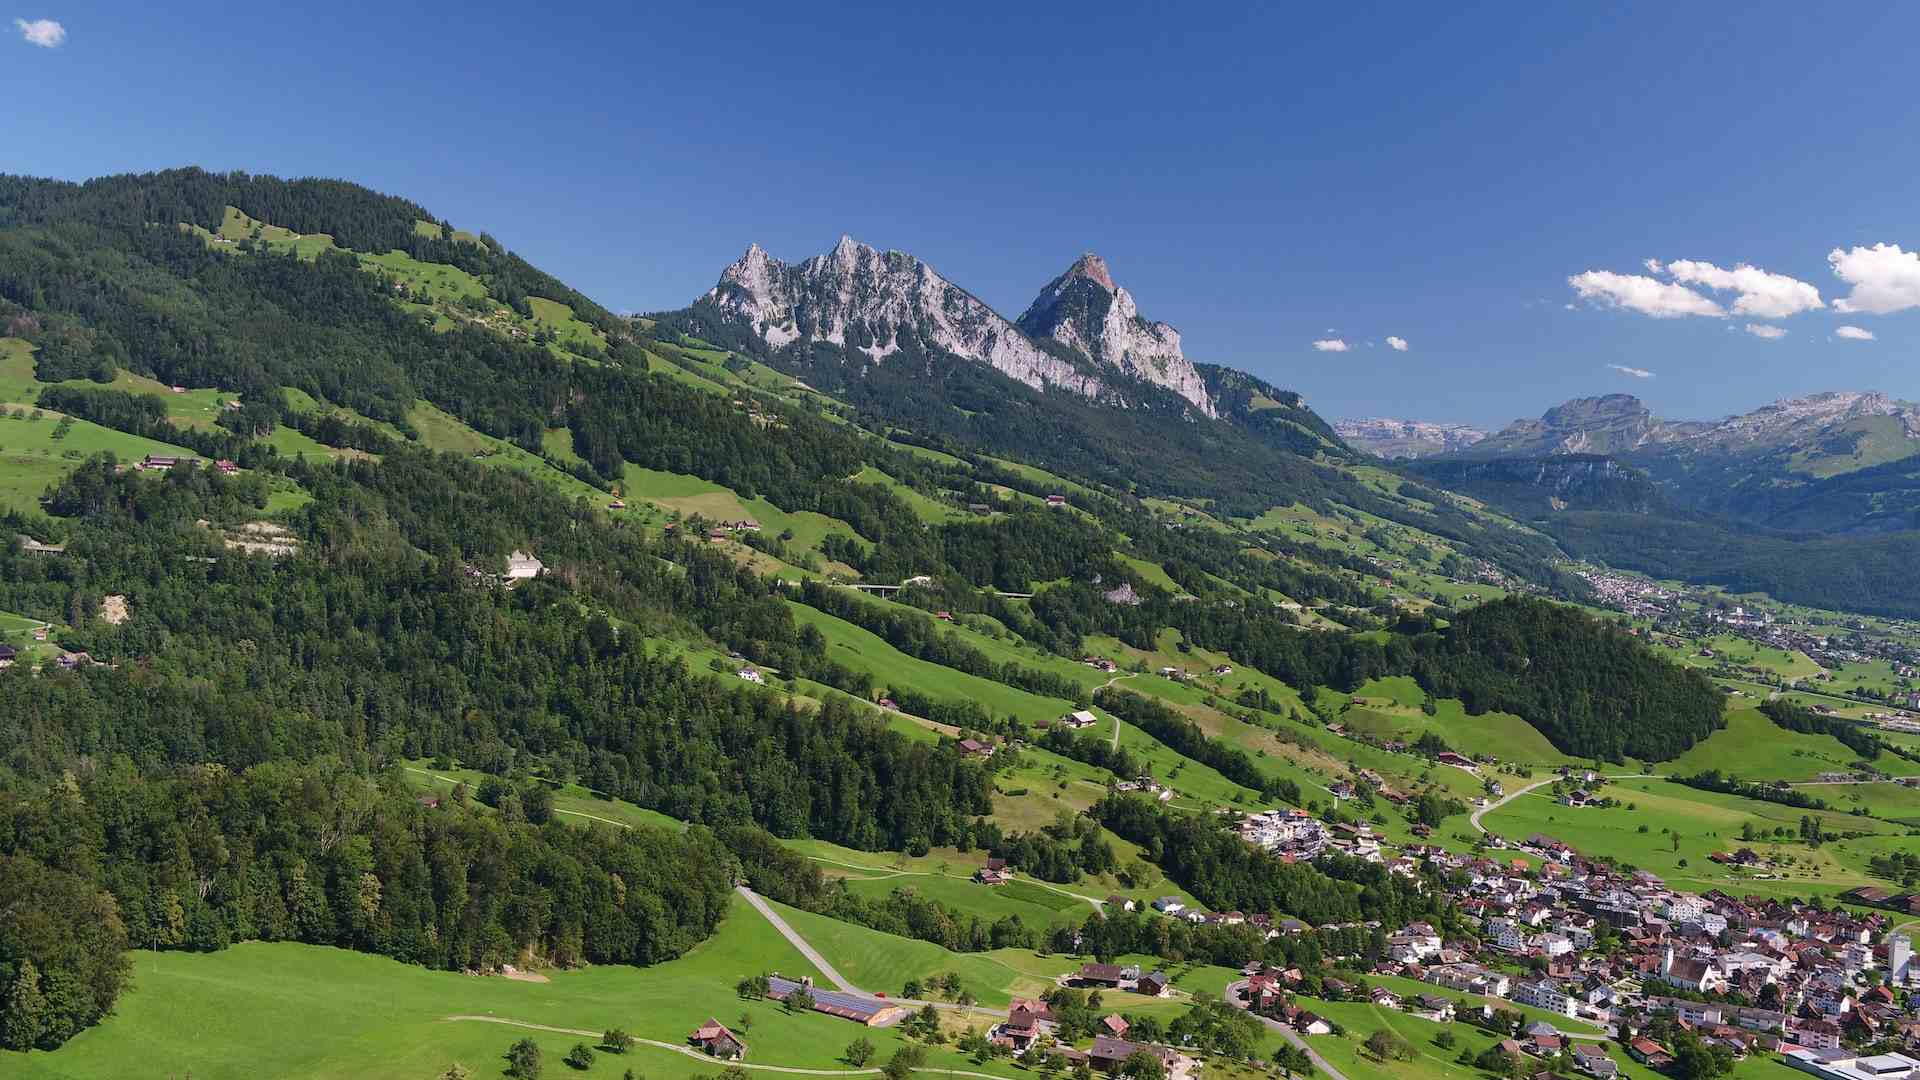 AstrantiAs GmbH, producer in Schindellegi canton of Schwyz in Switzerland